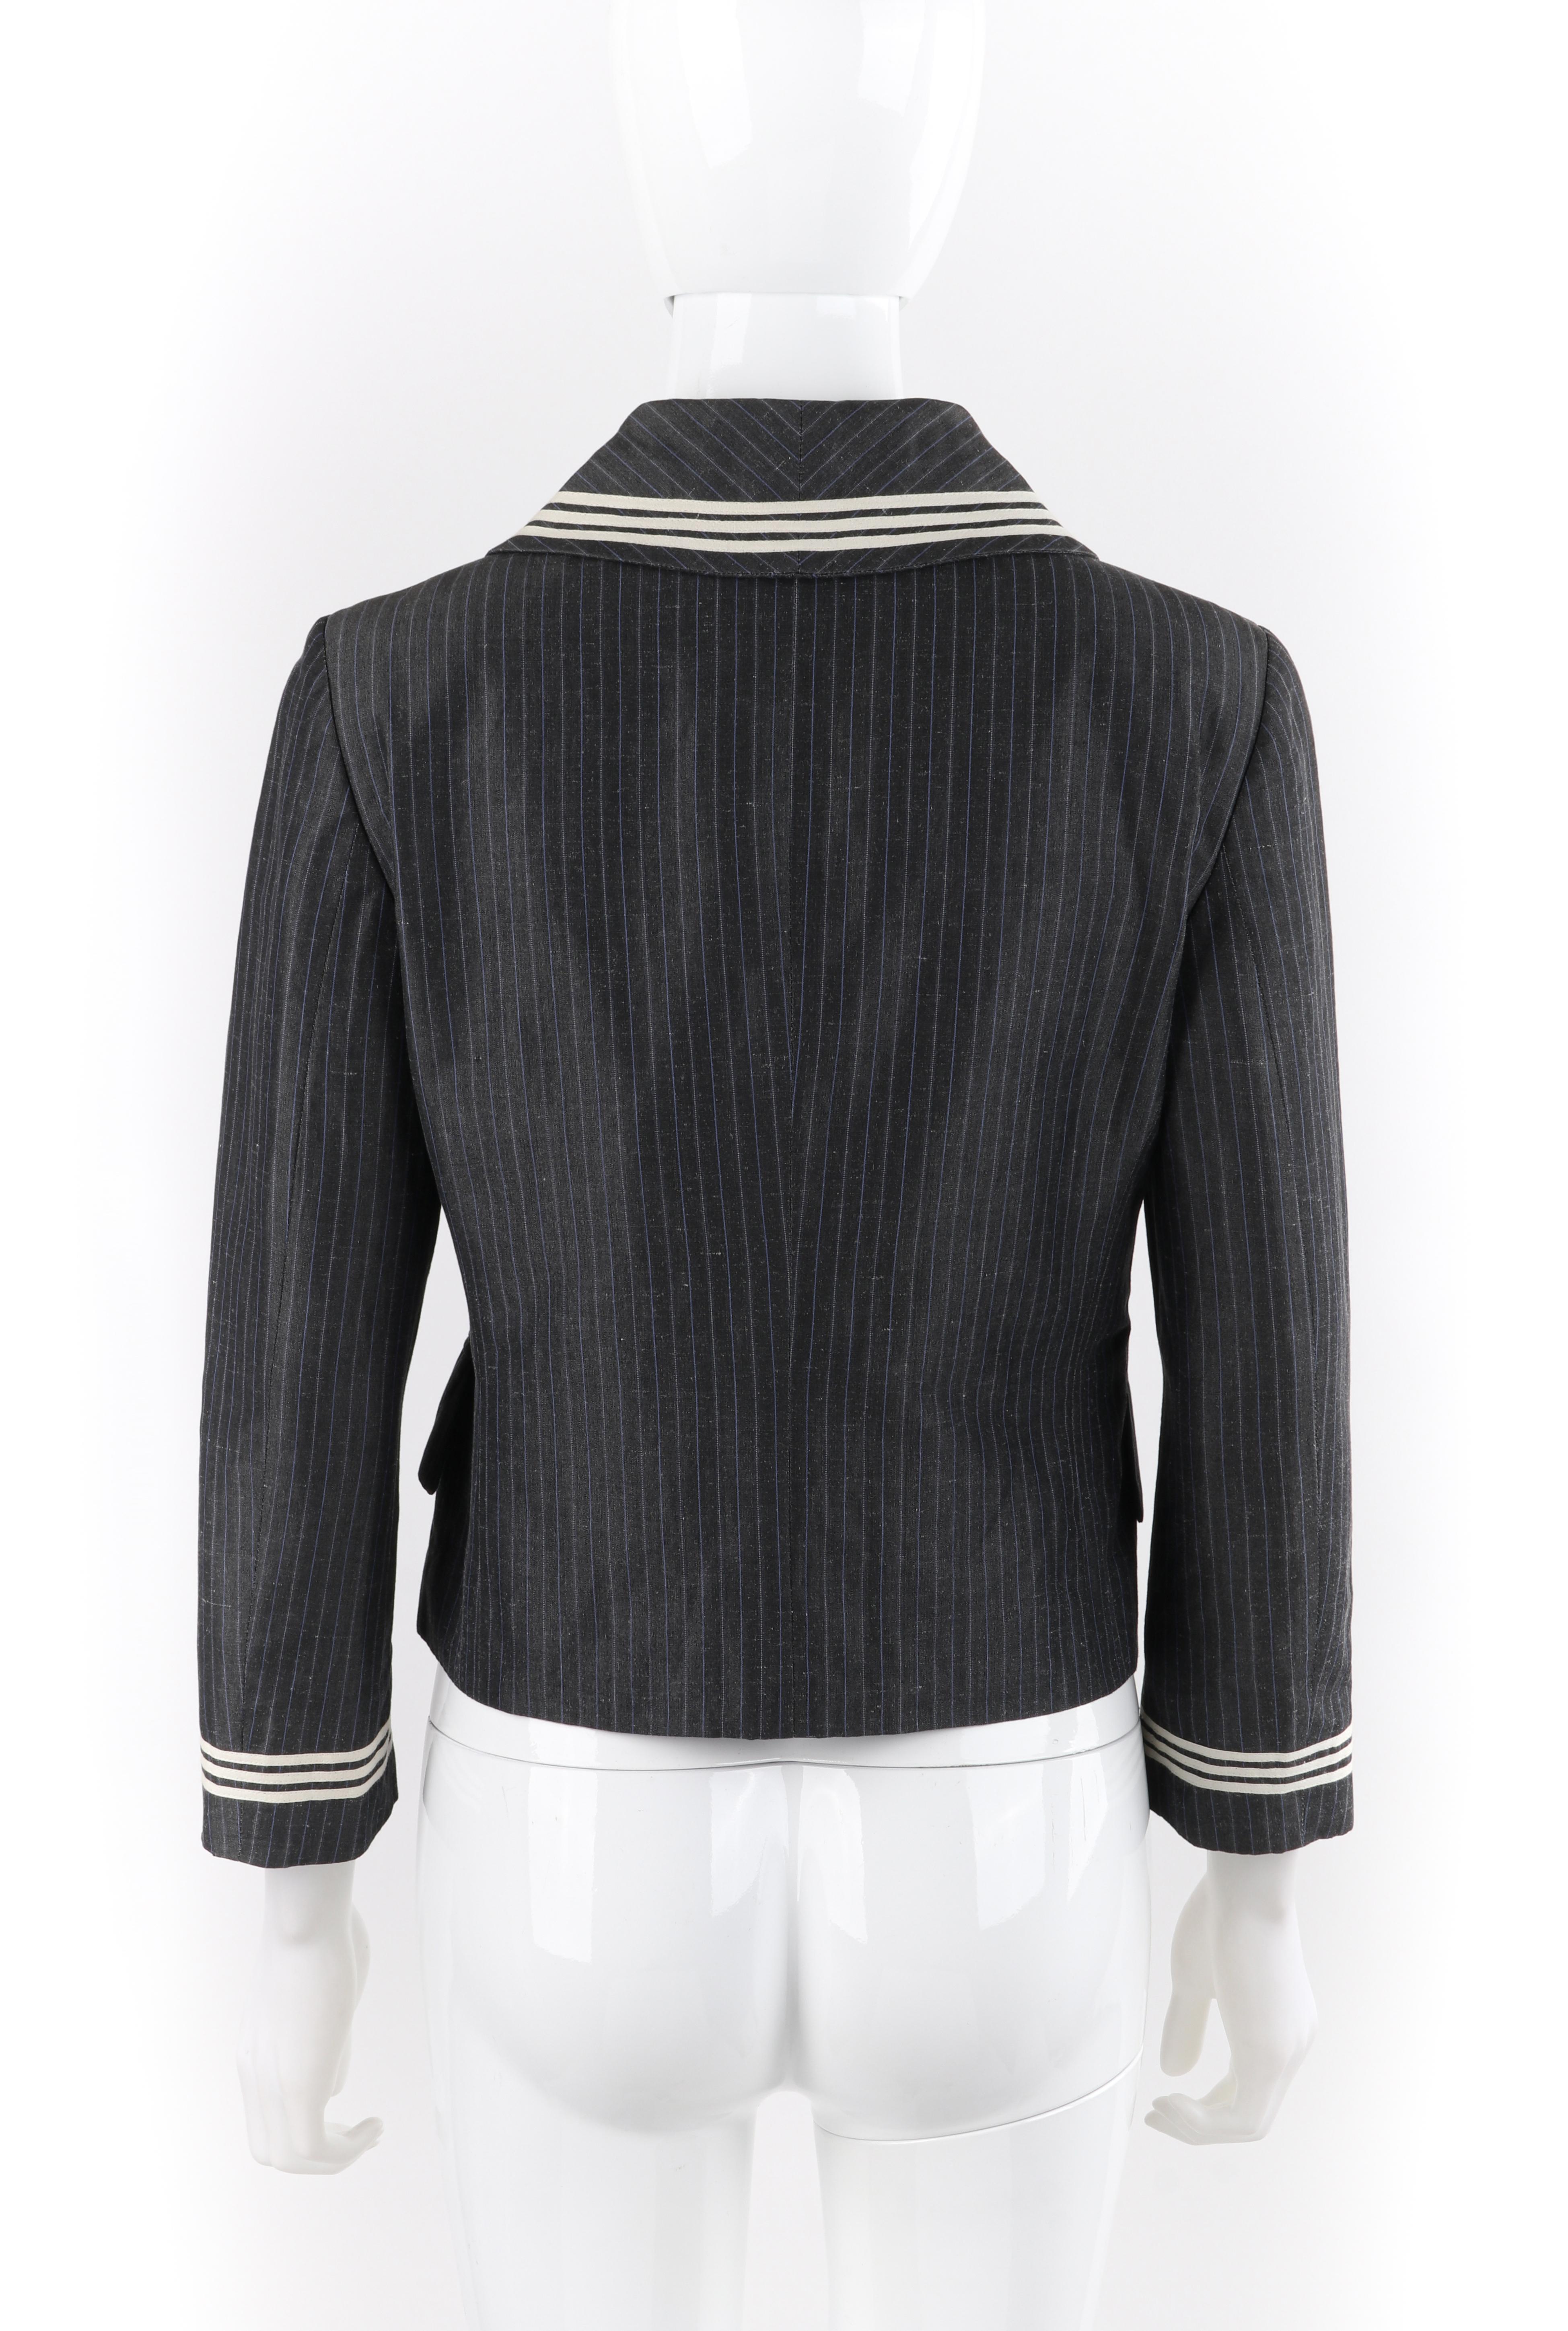 Women's ALEXANDER McQUEEN S/S 2005 Grey Pinstripe Sailor Blazer Jacket Shawl Collar